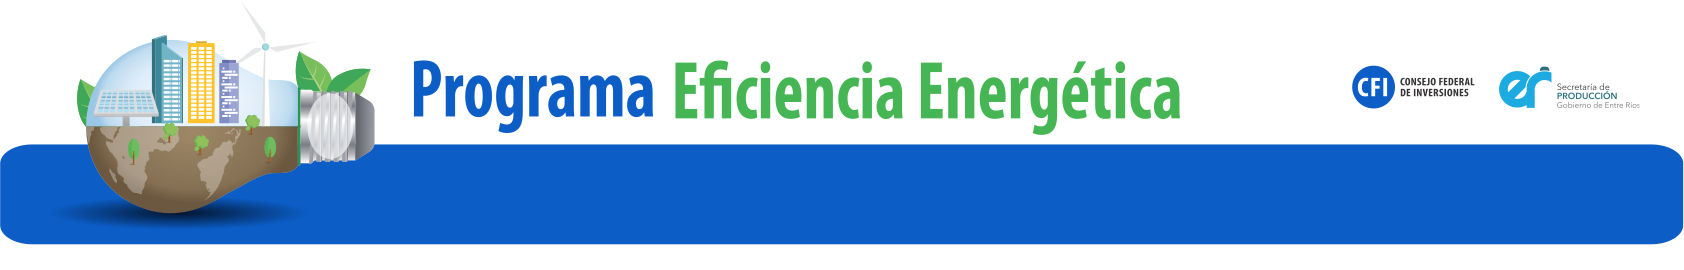 Formulario de Inscripción al Programa de Eficiencia Energética